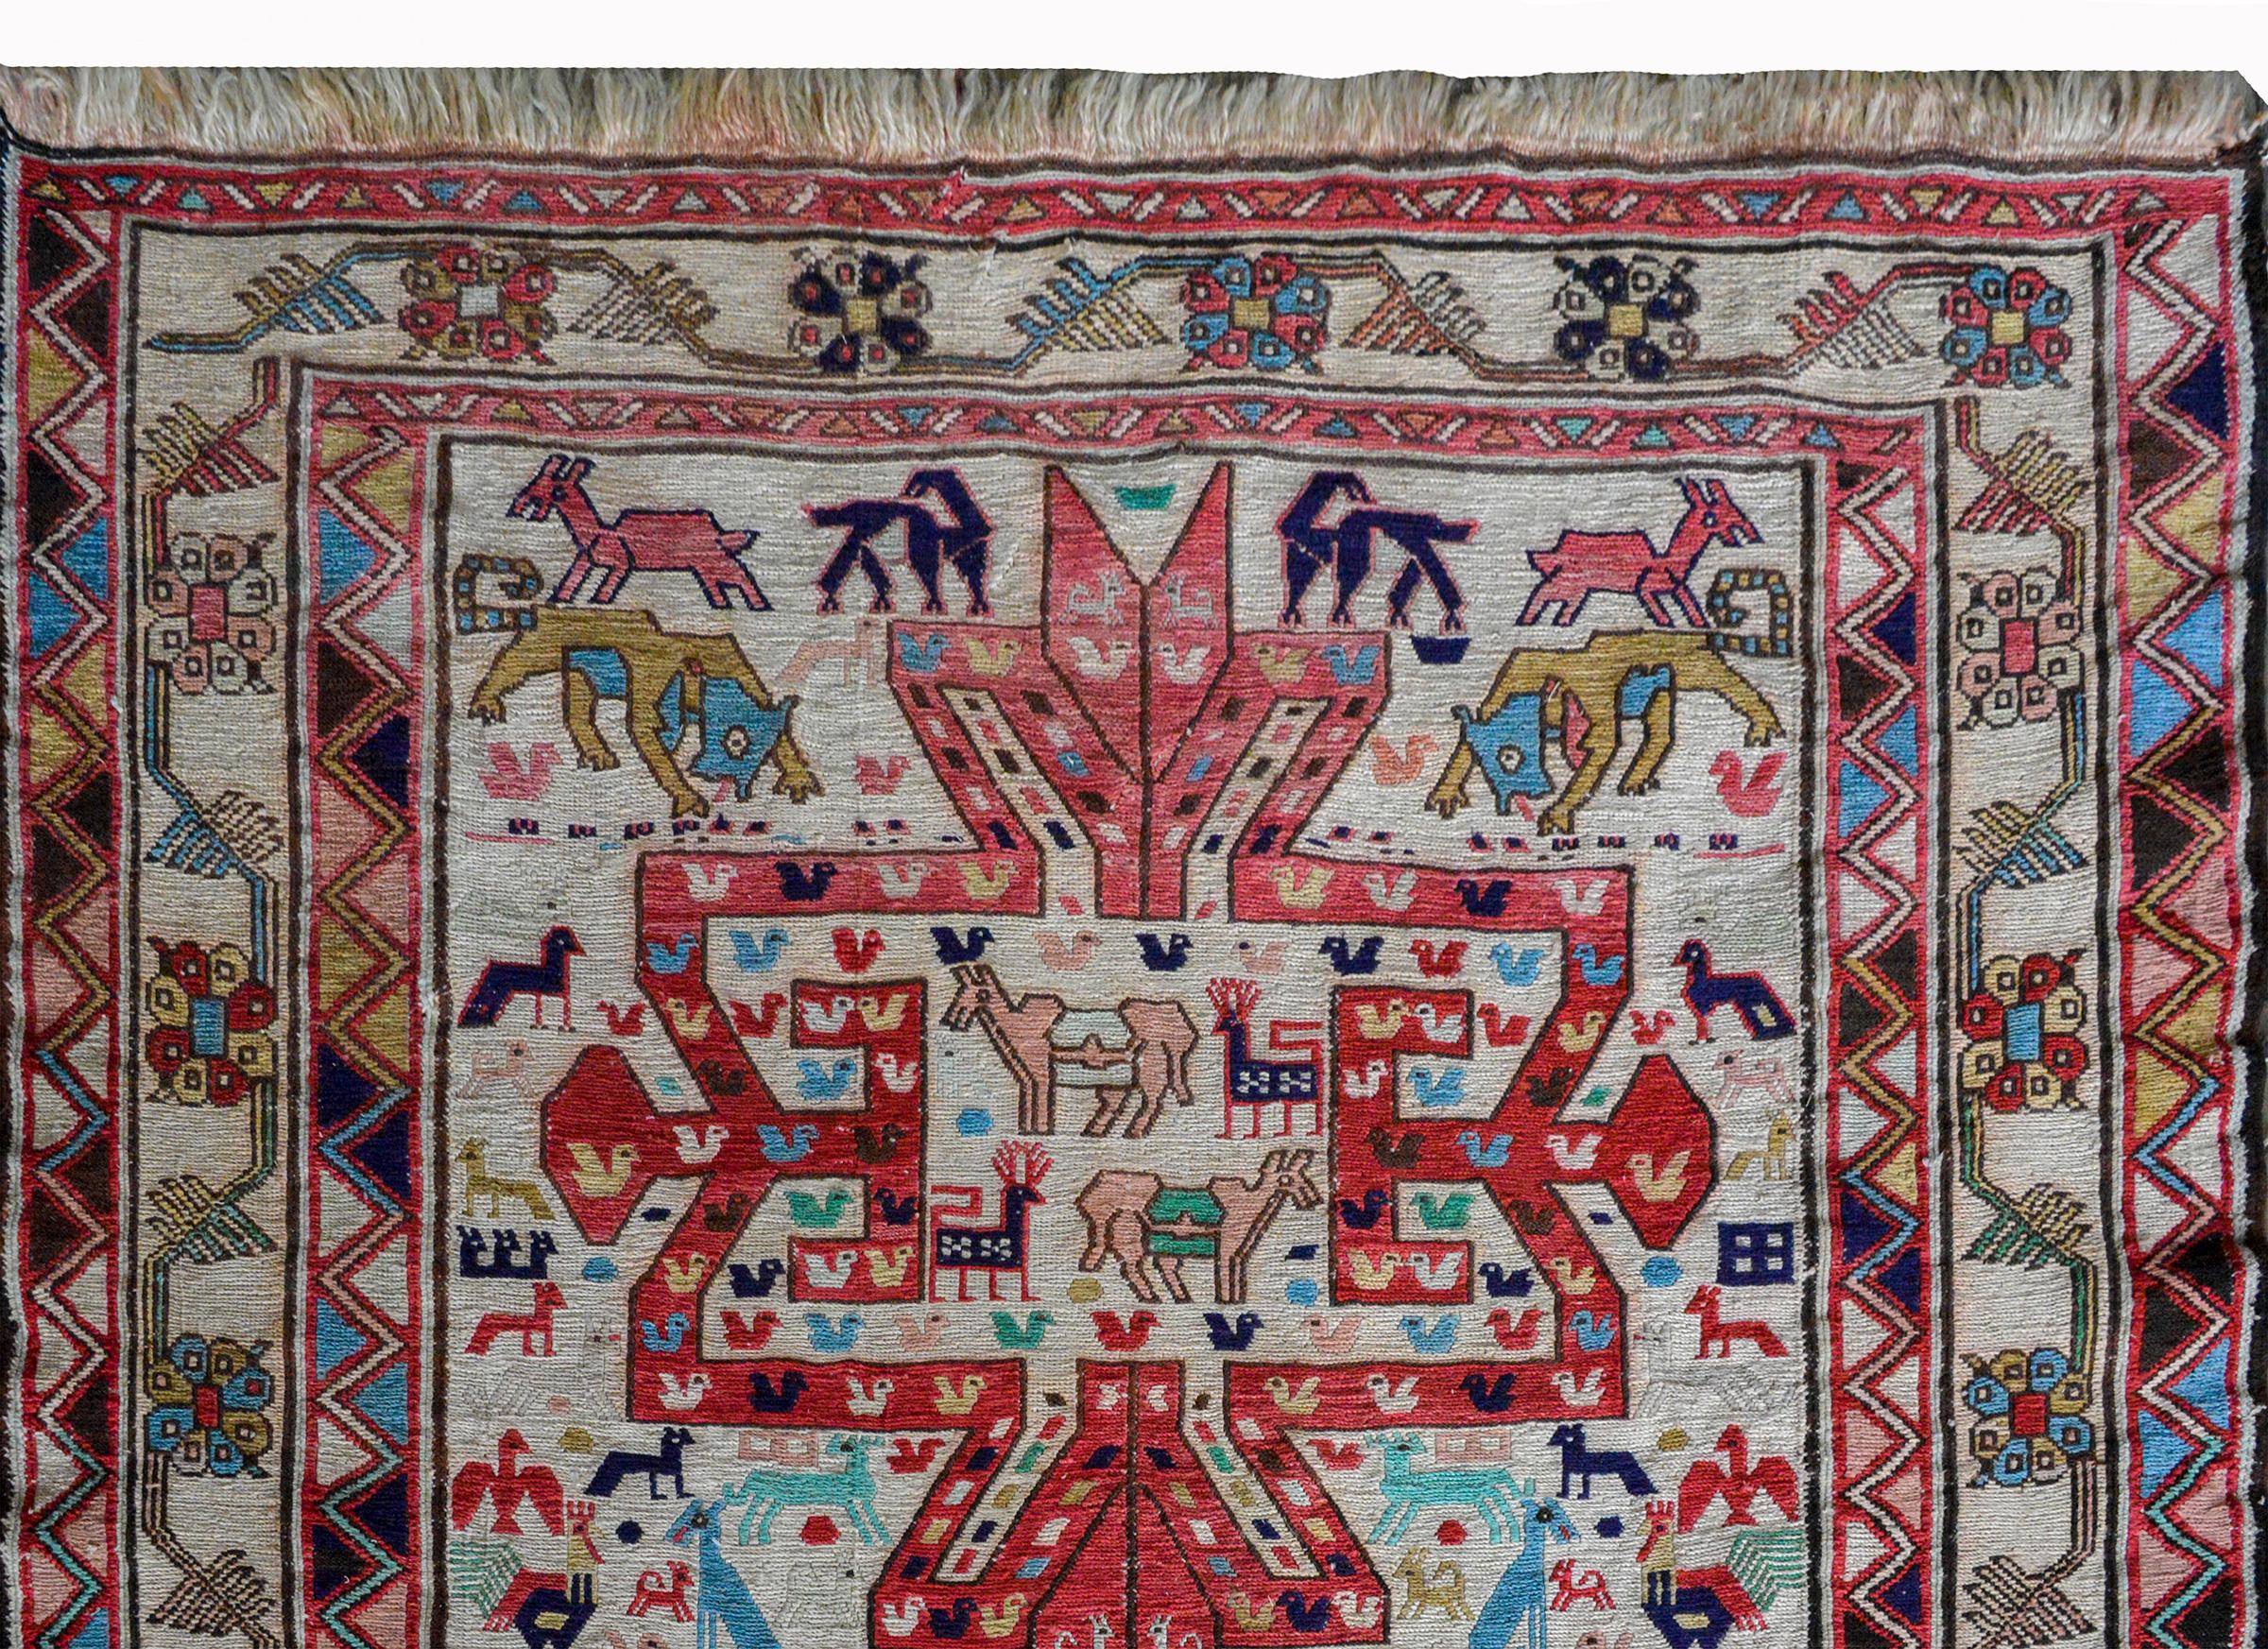 Un magnifique tapis Soumak vintage persan avec des animaux muraux, notamment des poulets, des chameaux, des lions, des chèvres et des tigres, tous tissés en rouge, indigo, rose, vert et or sur un fond blanc, et entourés de larges bordures